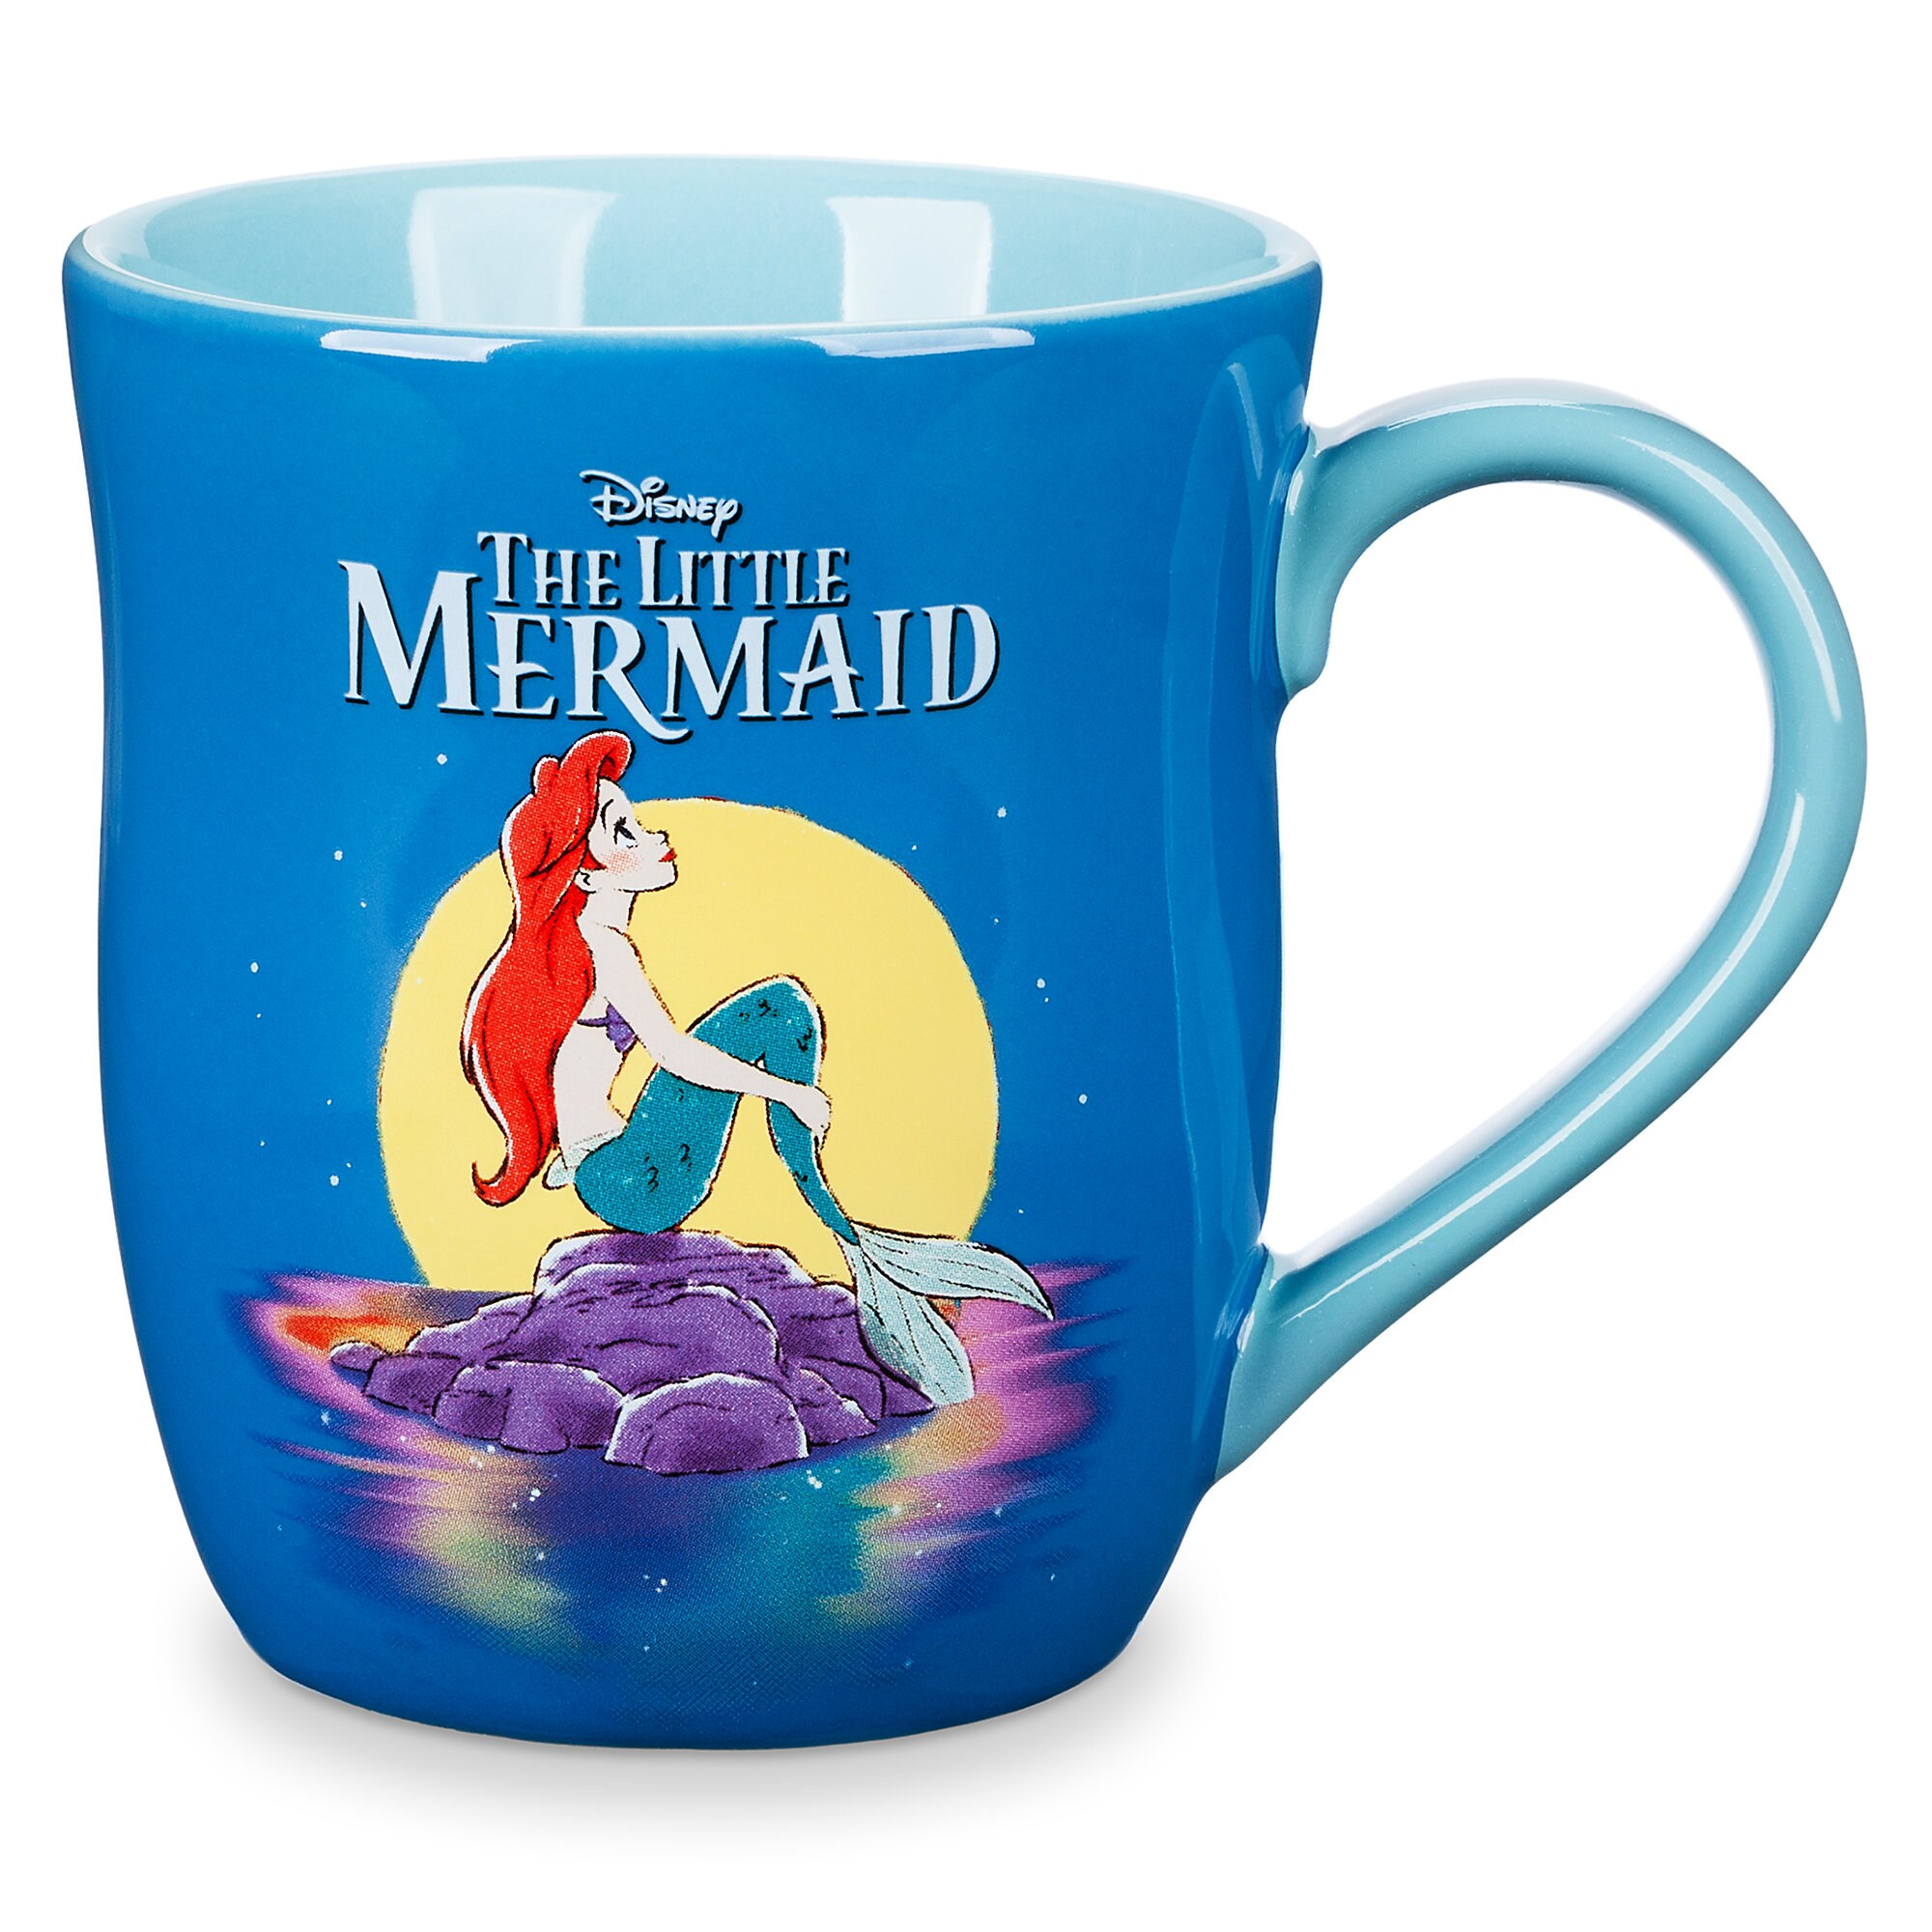 The Little Mermaid Mug